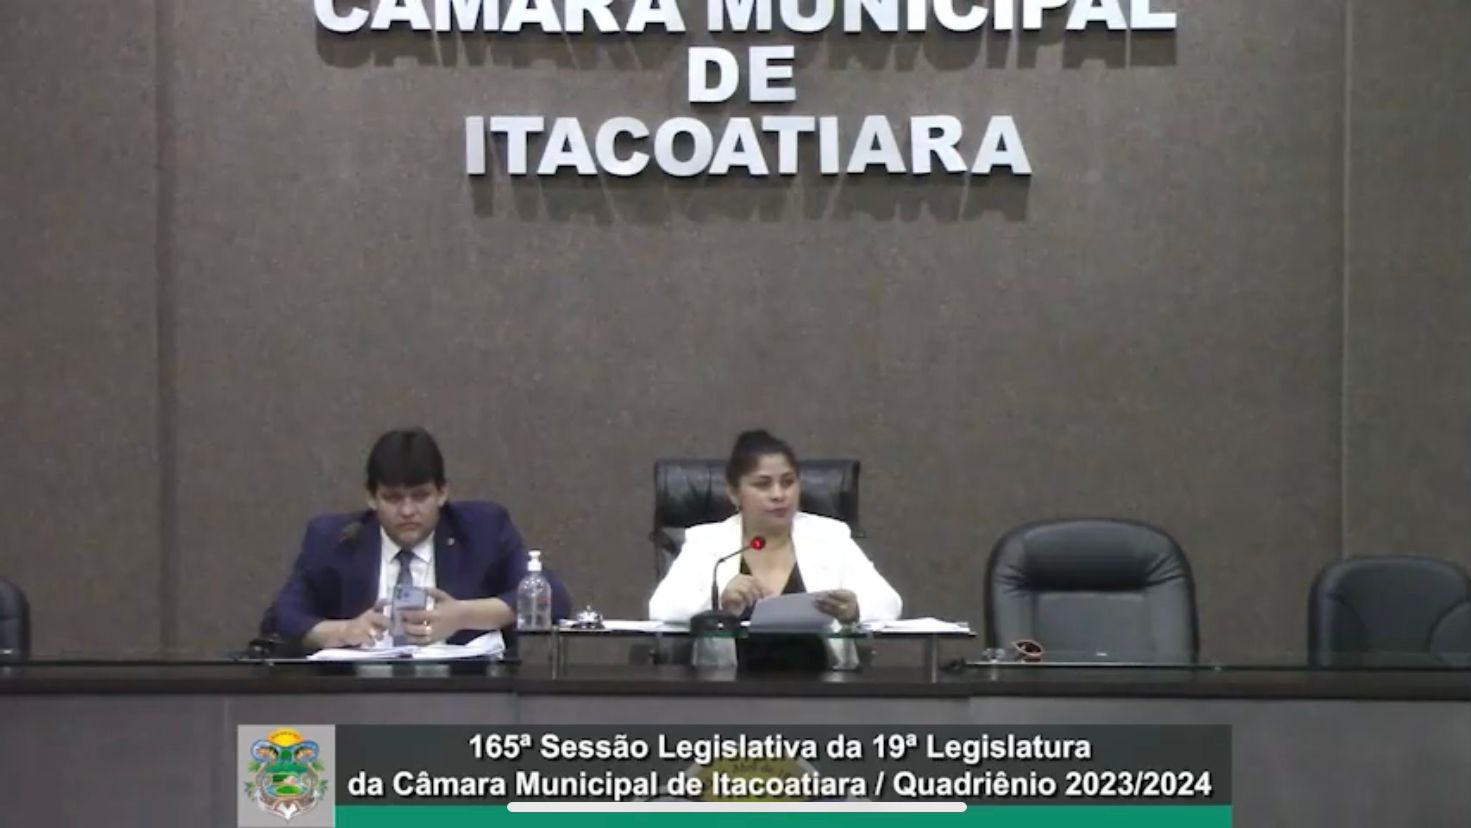 Resumo da 165ª Sessão Legislativa da 19ª Legislatura da Câmara Municipal de Itacoatiara / Quadriênio 2023/2024 